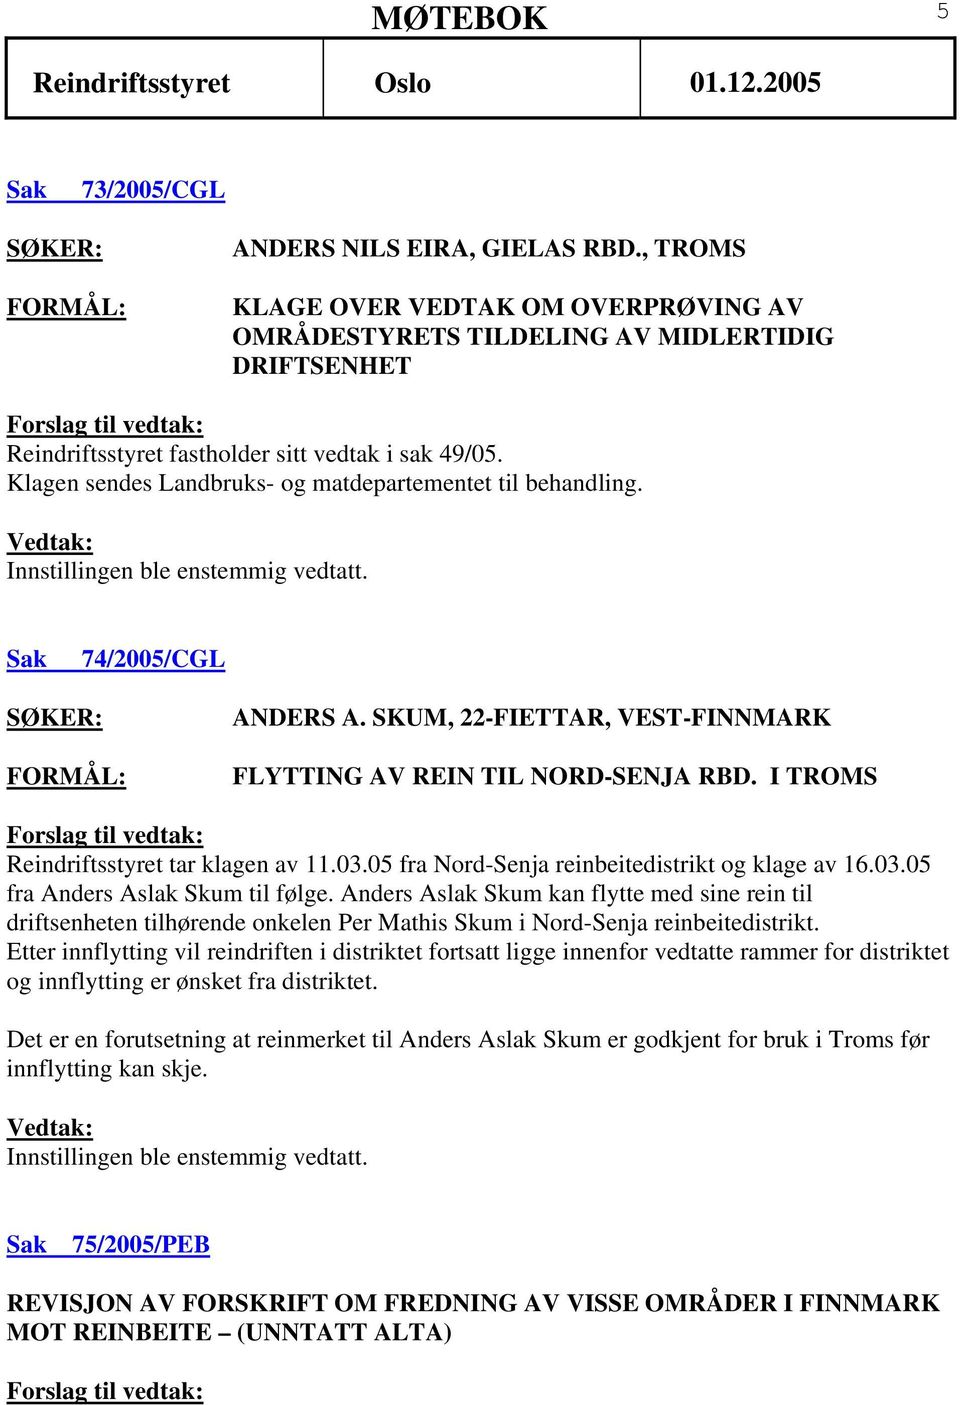 I TROMS Reindriftsstyret tar klagen av 11.03.05 fra Nord-Senja reinbeitedistrikt og klage av 16.03.05 fra Anders Aslak Skum til følge.